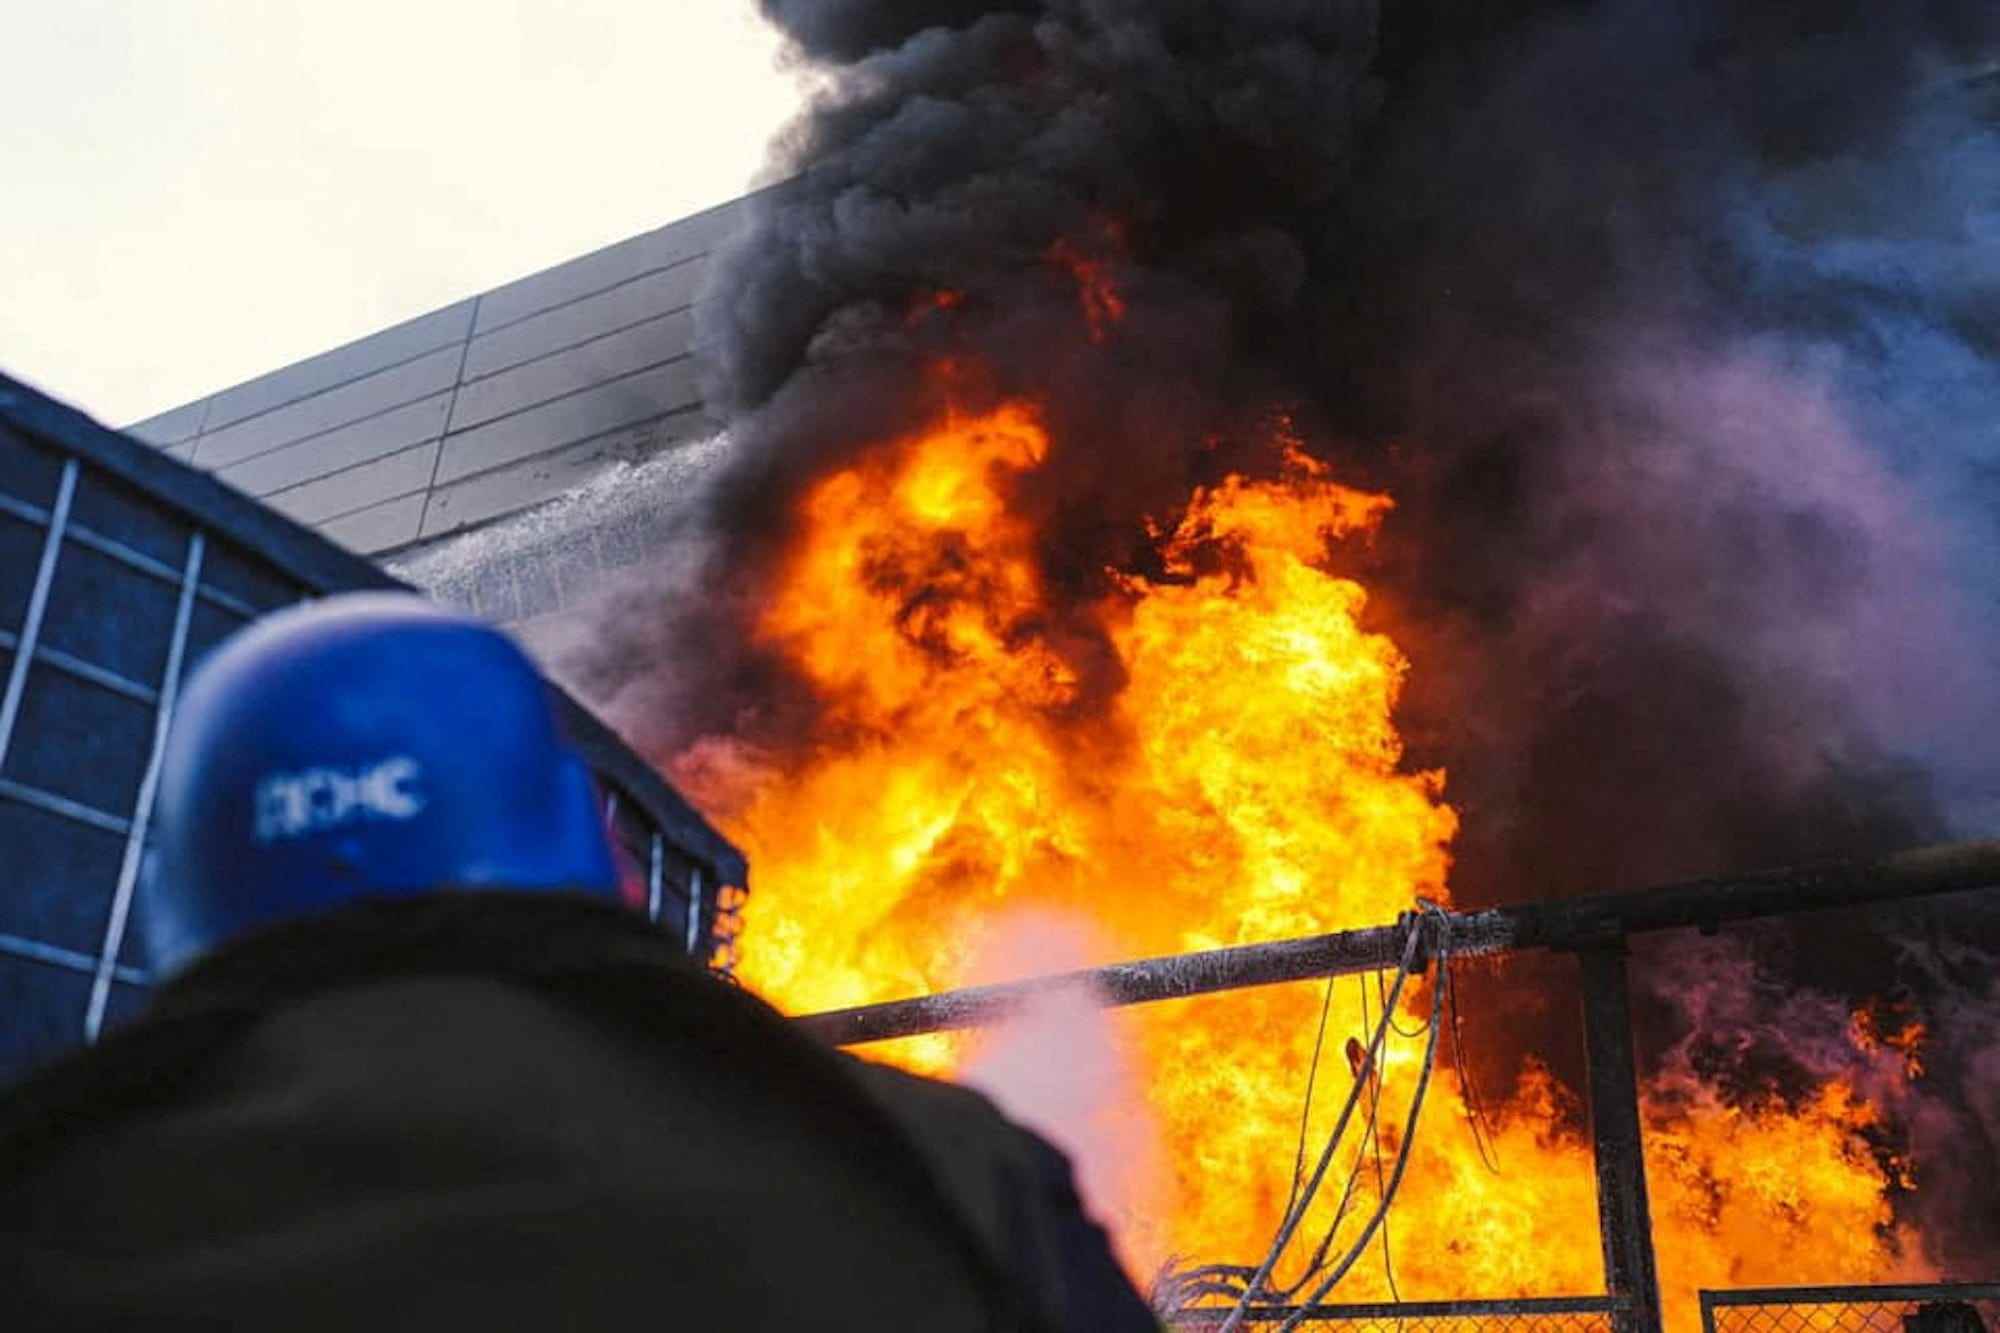 Feuerwehrleute arbeiten daran, ein Feuer in einem Wärmekraftwerk zu löschen, das am 18. Oktober 2022 in Kiew, Ukraine, durch einen russischen Raketenangriff beschädigt wurde.